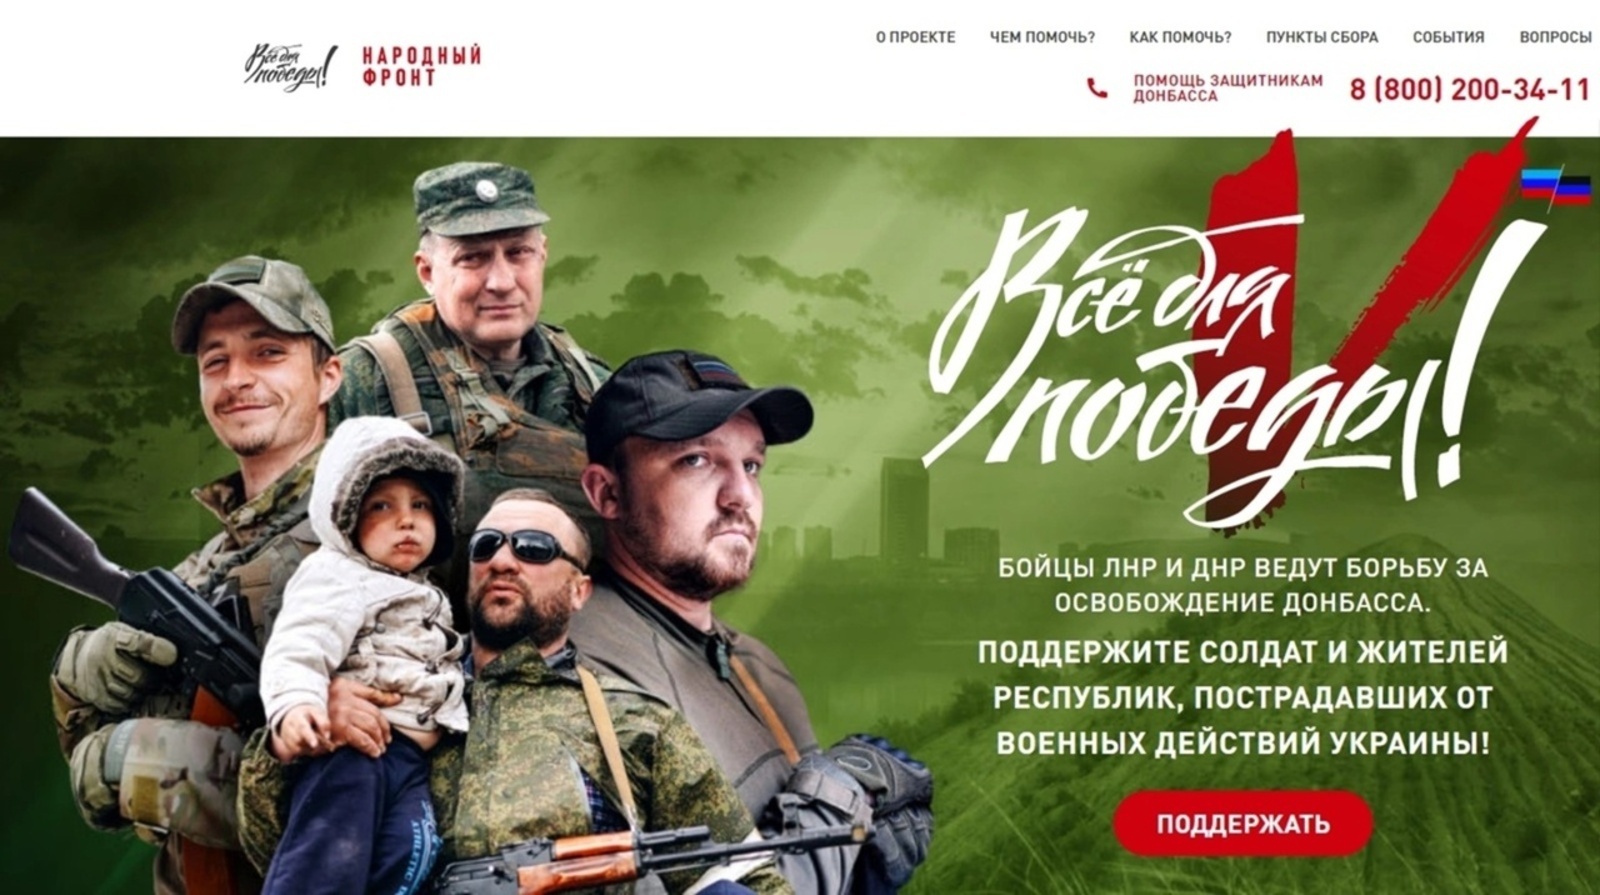 Для поддержки солдат и жителей Донецкой и Луганской народных республик